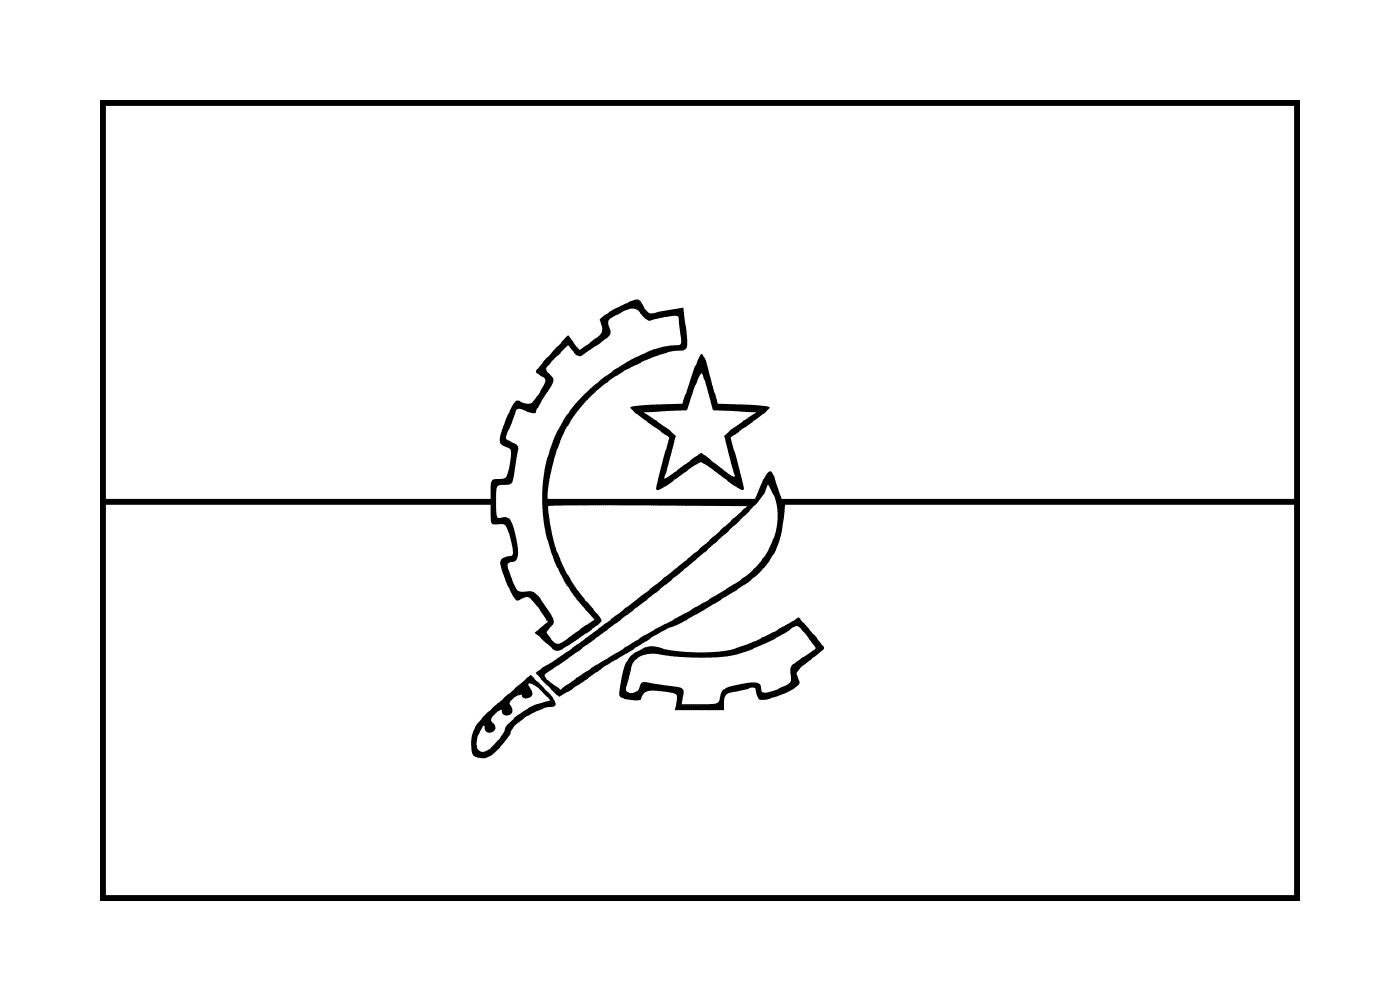  Bandera de Angola 